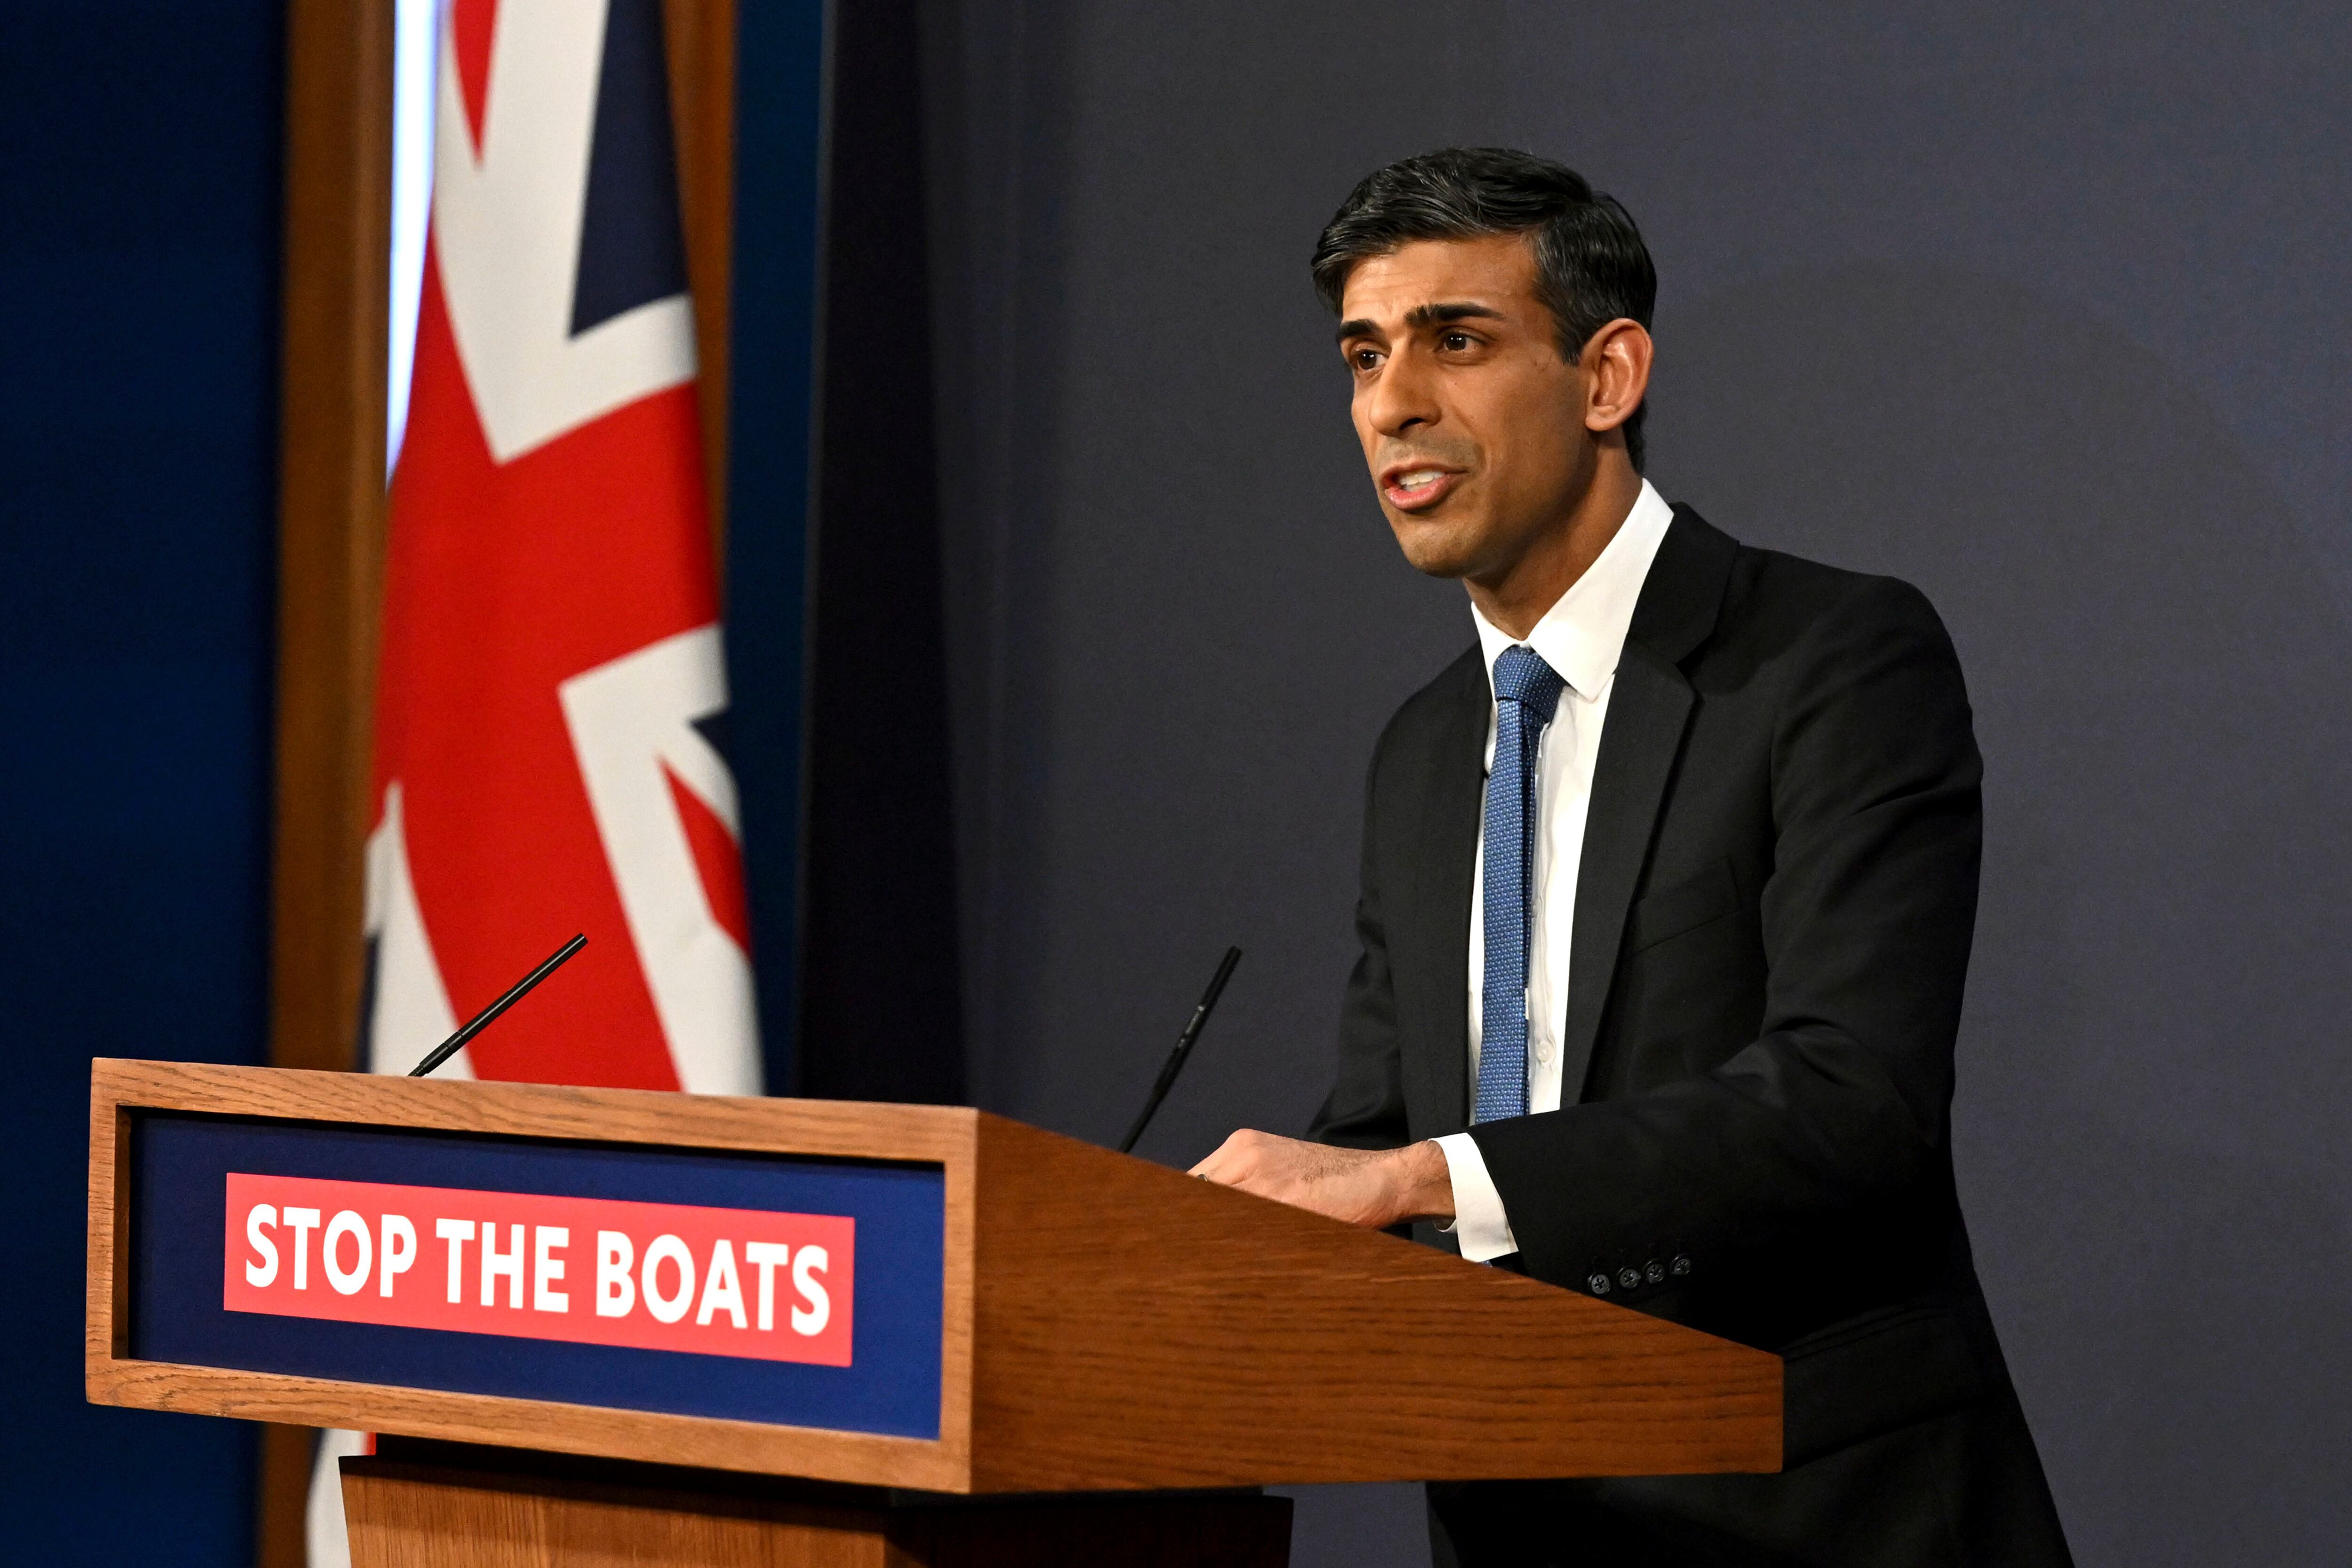 "Detegan los botes": el mensaje sobre la inmigración que cruza día a día el Ccanal de la Mancha es claro en el atril desde el que habla el primer ministro británico Rishi Sunak (Leon Neal/Foto compartida vía AP)